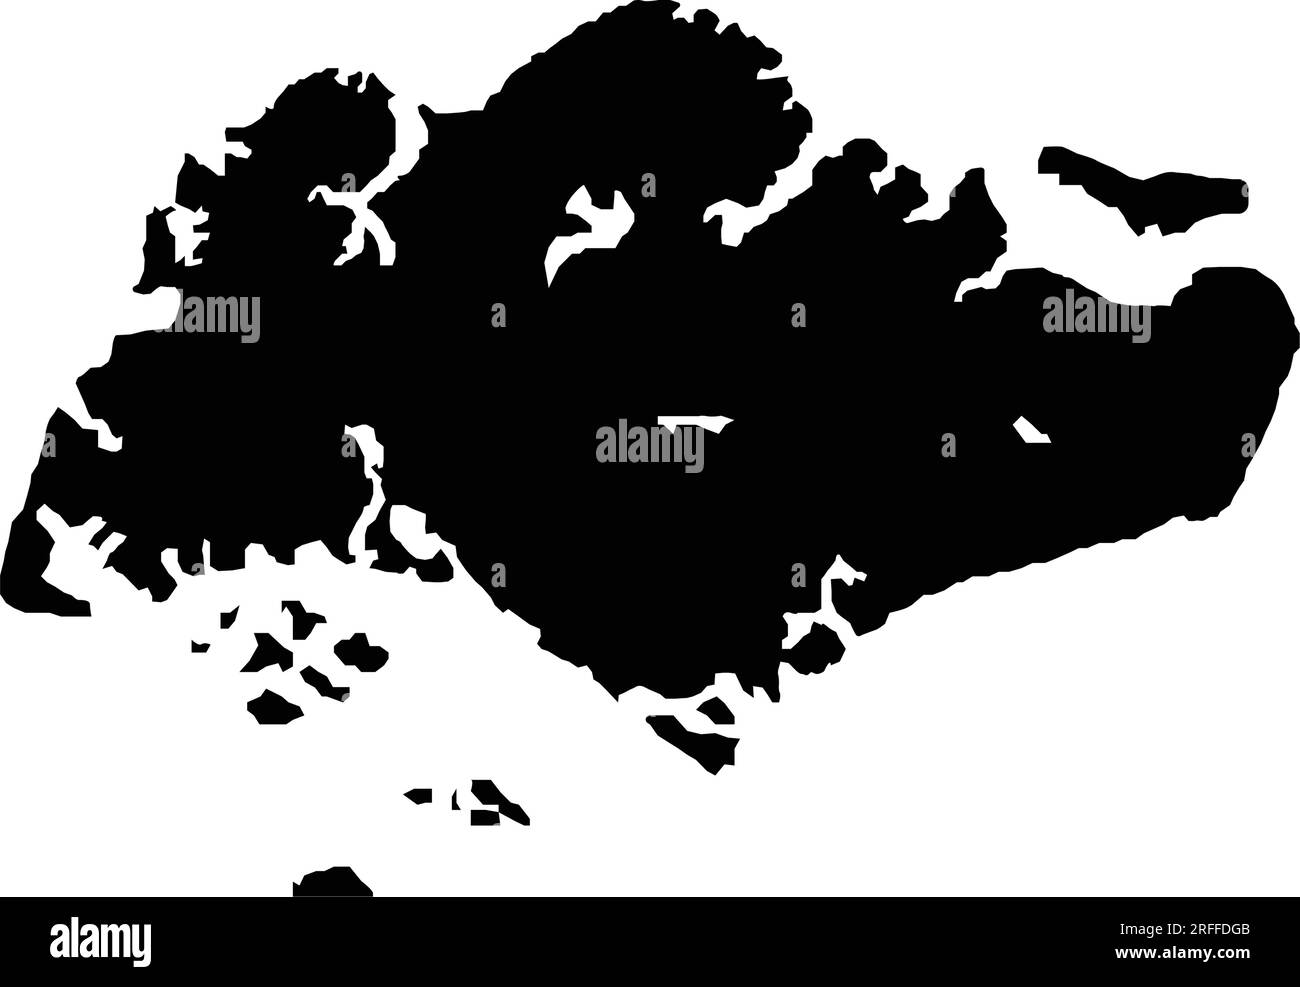 disegno dell'illustrazione vettoriale dell'icona della mappa di singapore Illustrazione Vettoriale